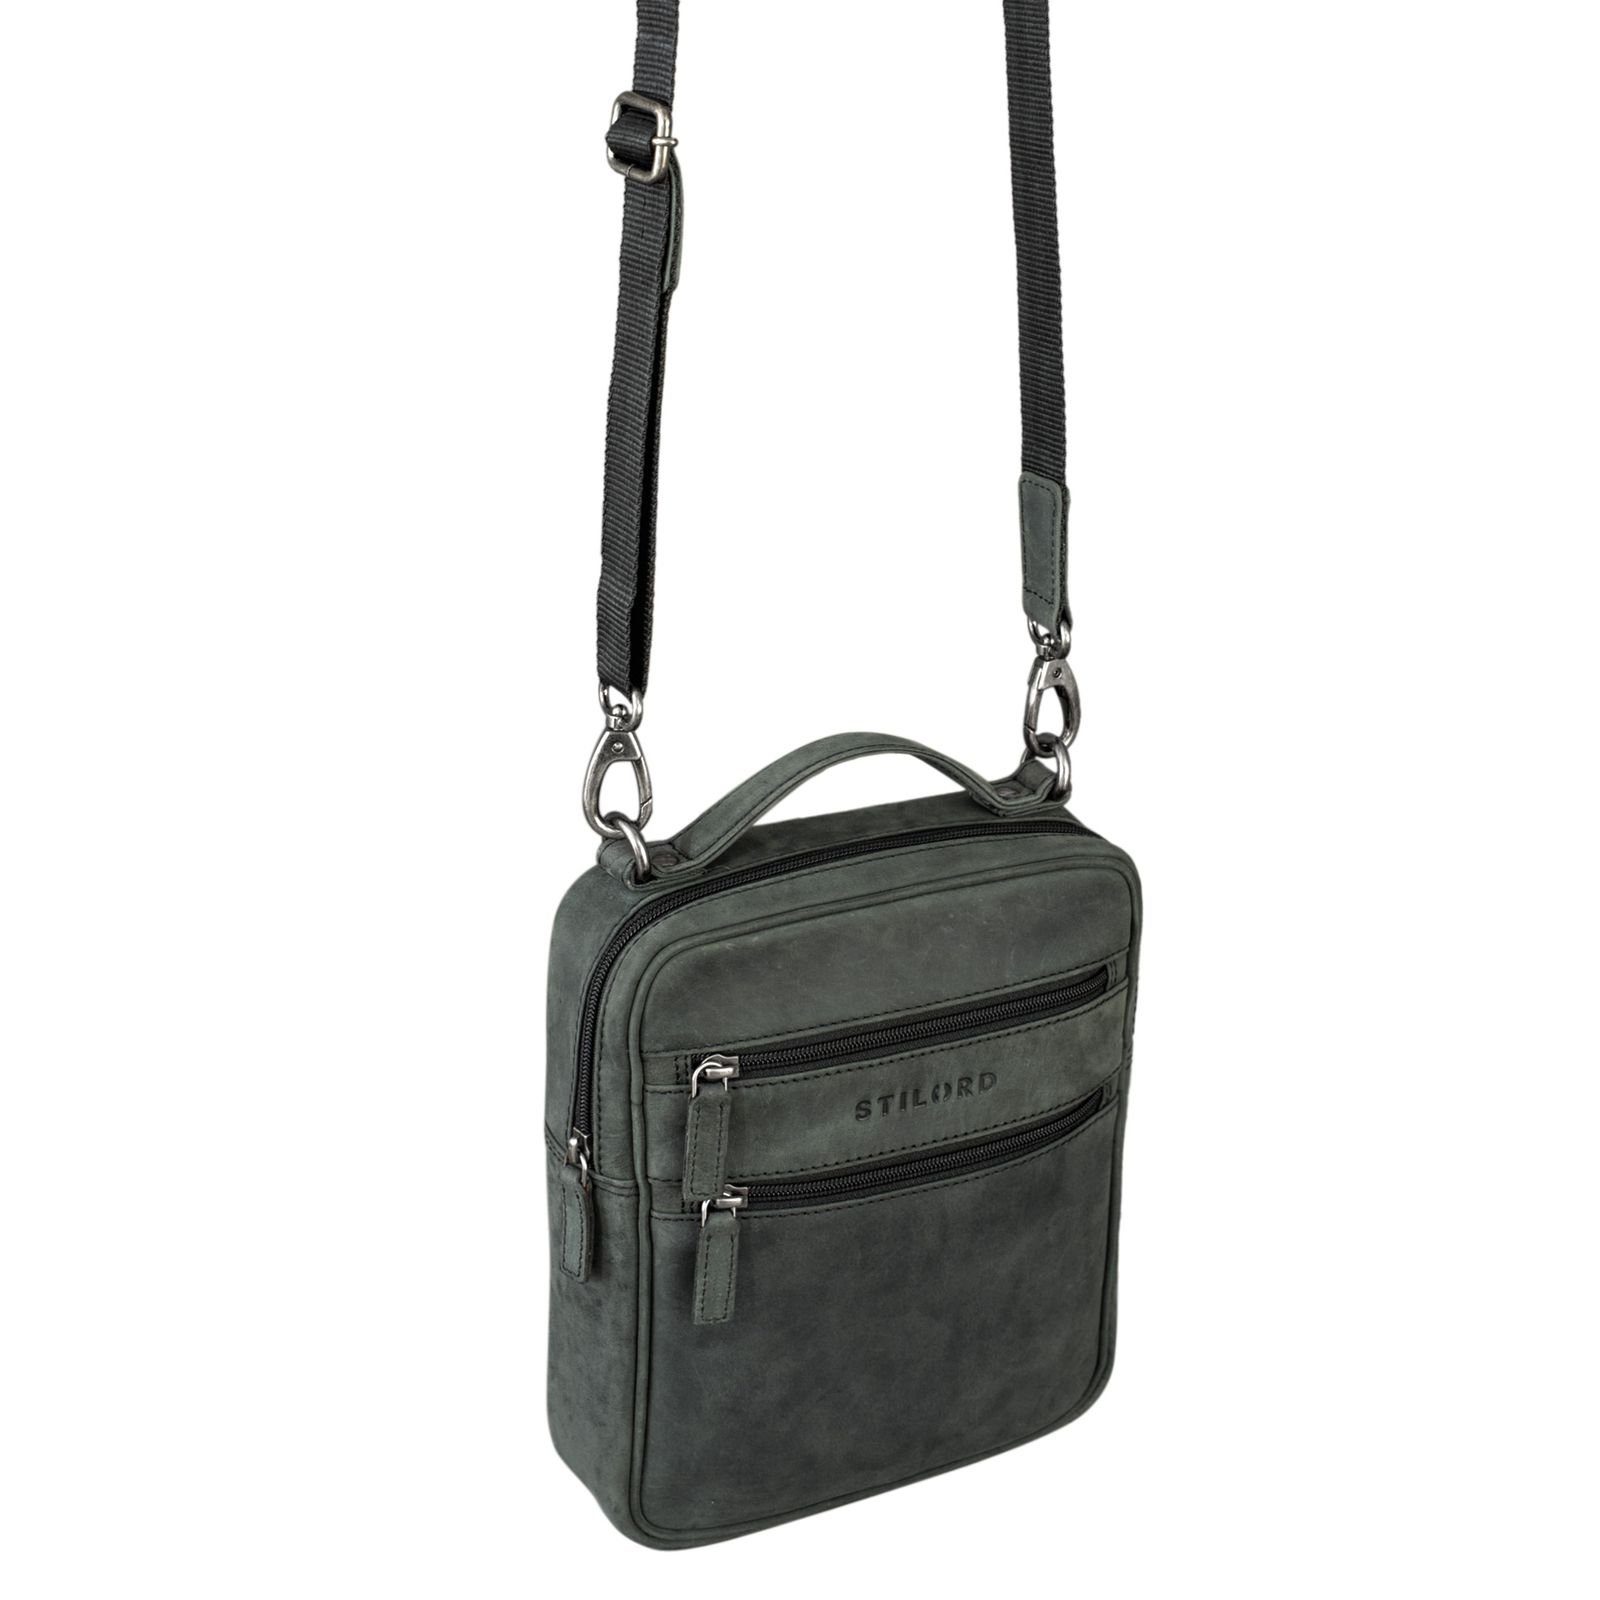 Bag Vintage "Mats" anthrazit Herren Messenger STILORD Leder Handtasche